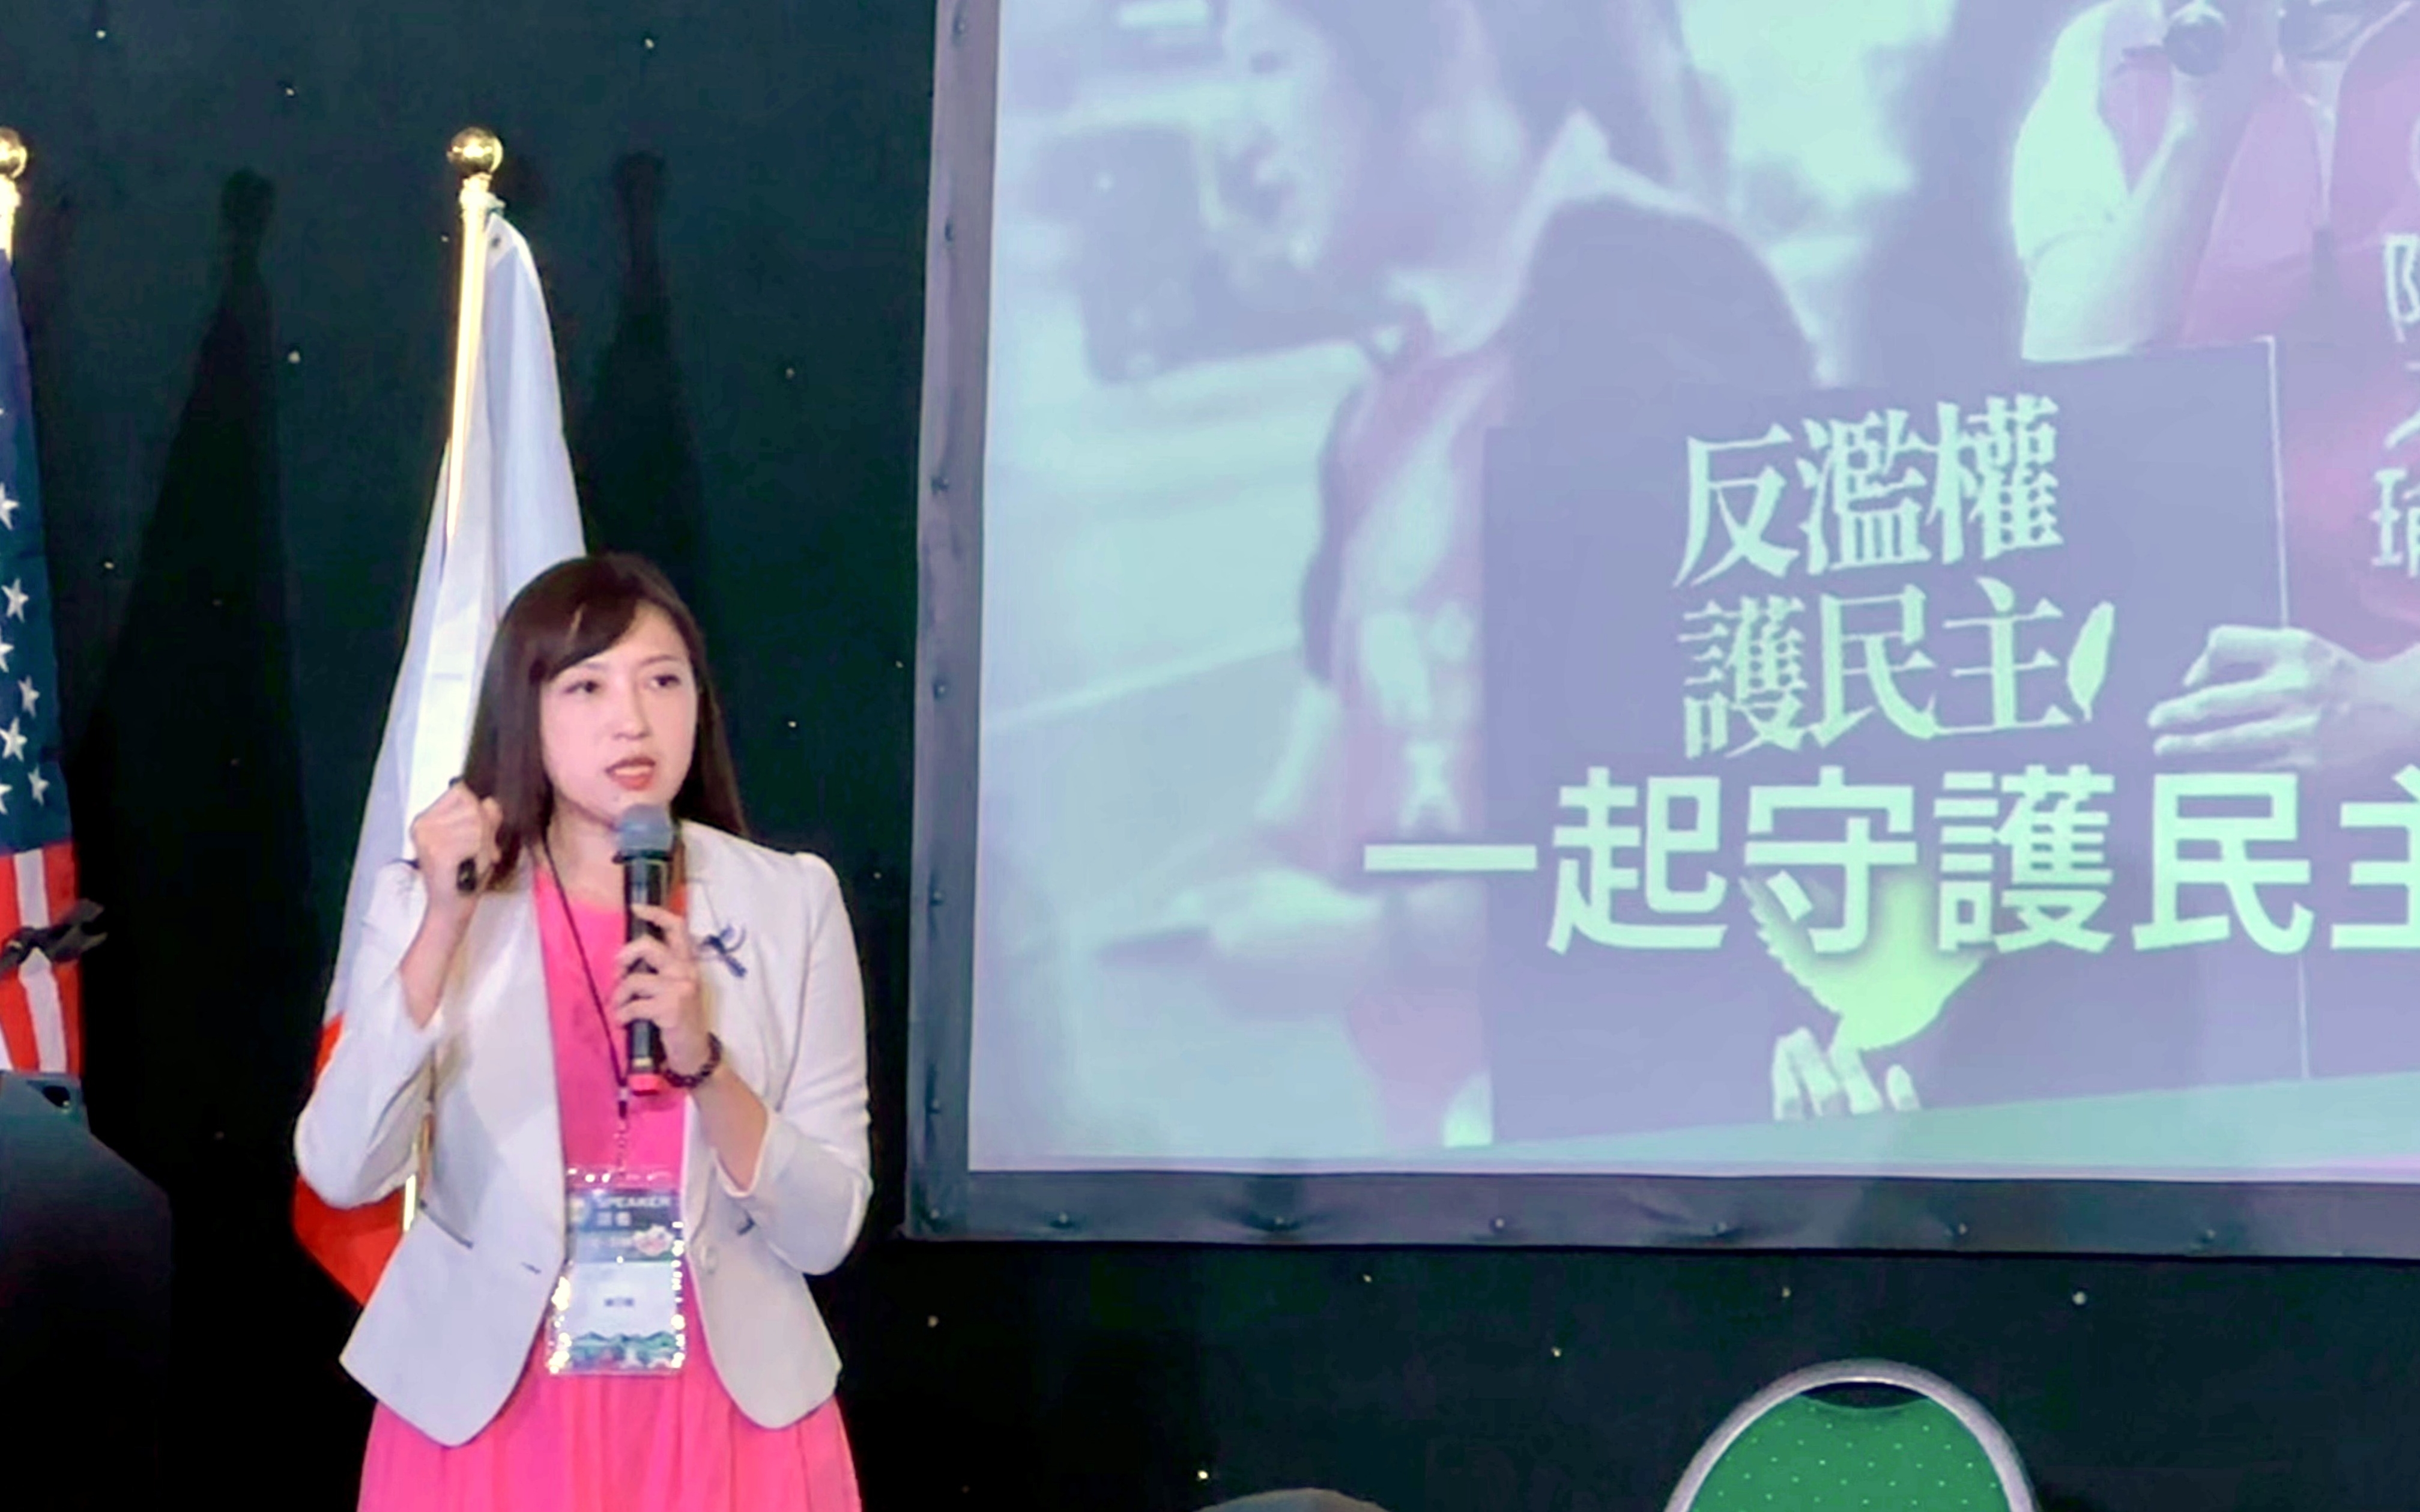 新北市議員陳乃瑜 美西談教育媒體素養